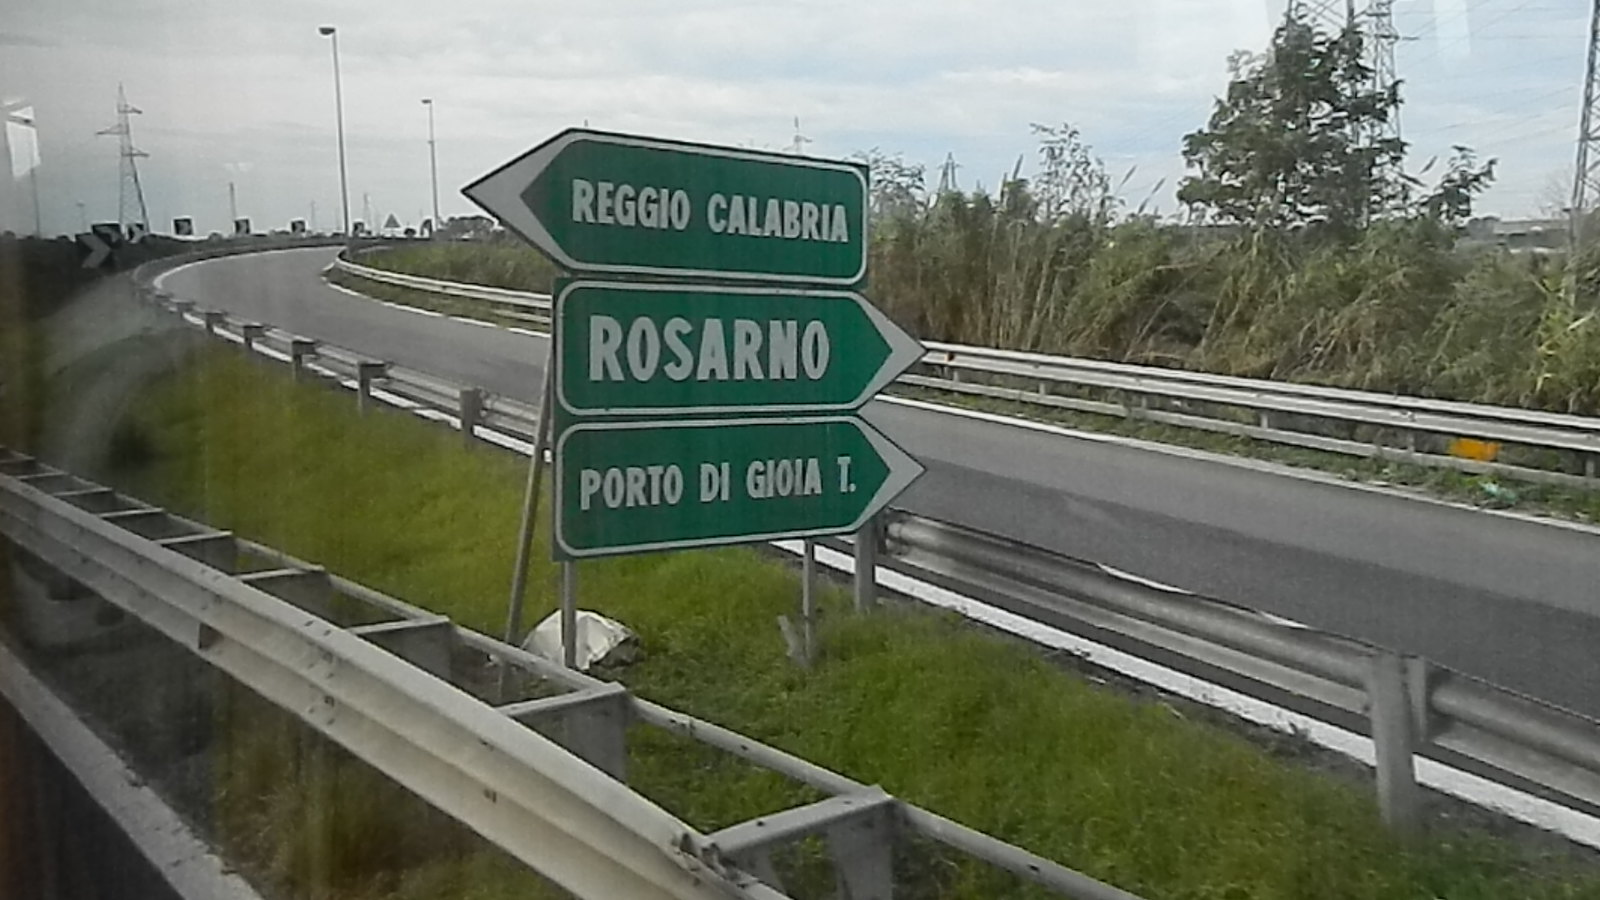 Salerno - Reggio Calabria